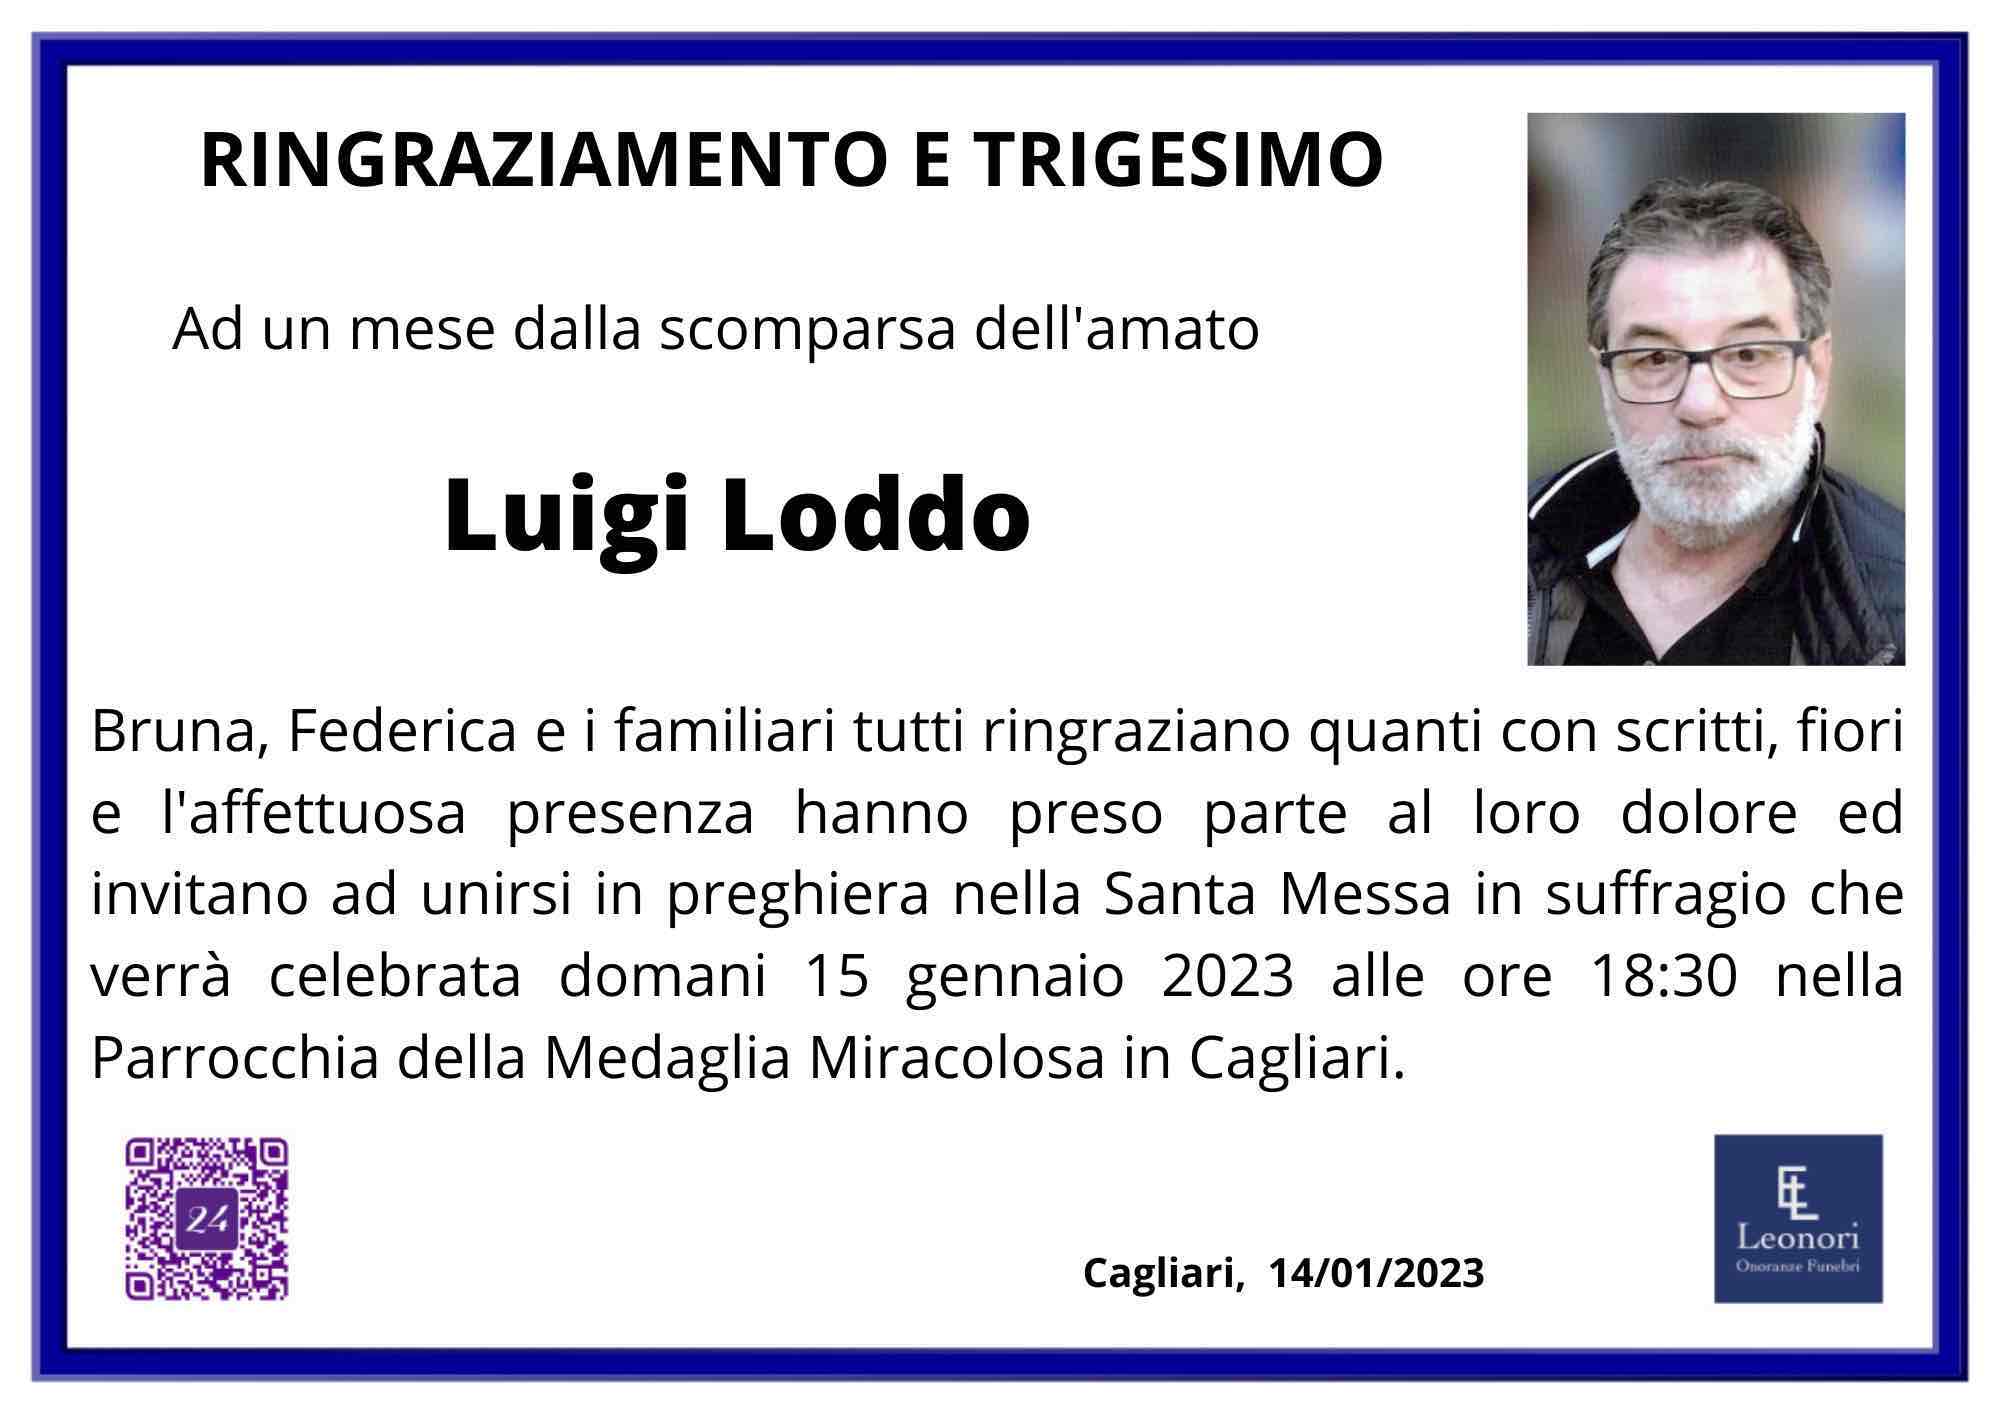 Loddo Luigi